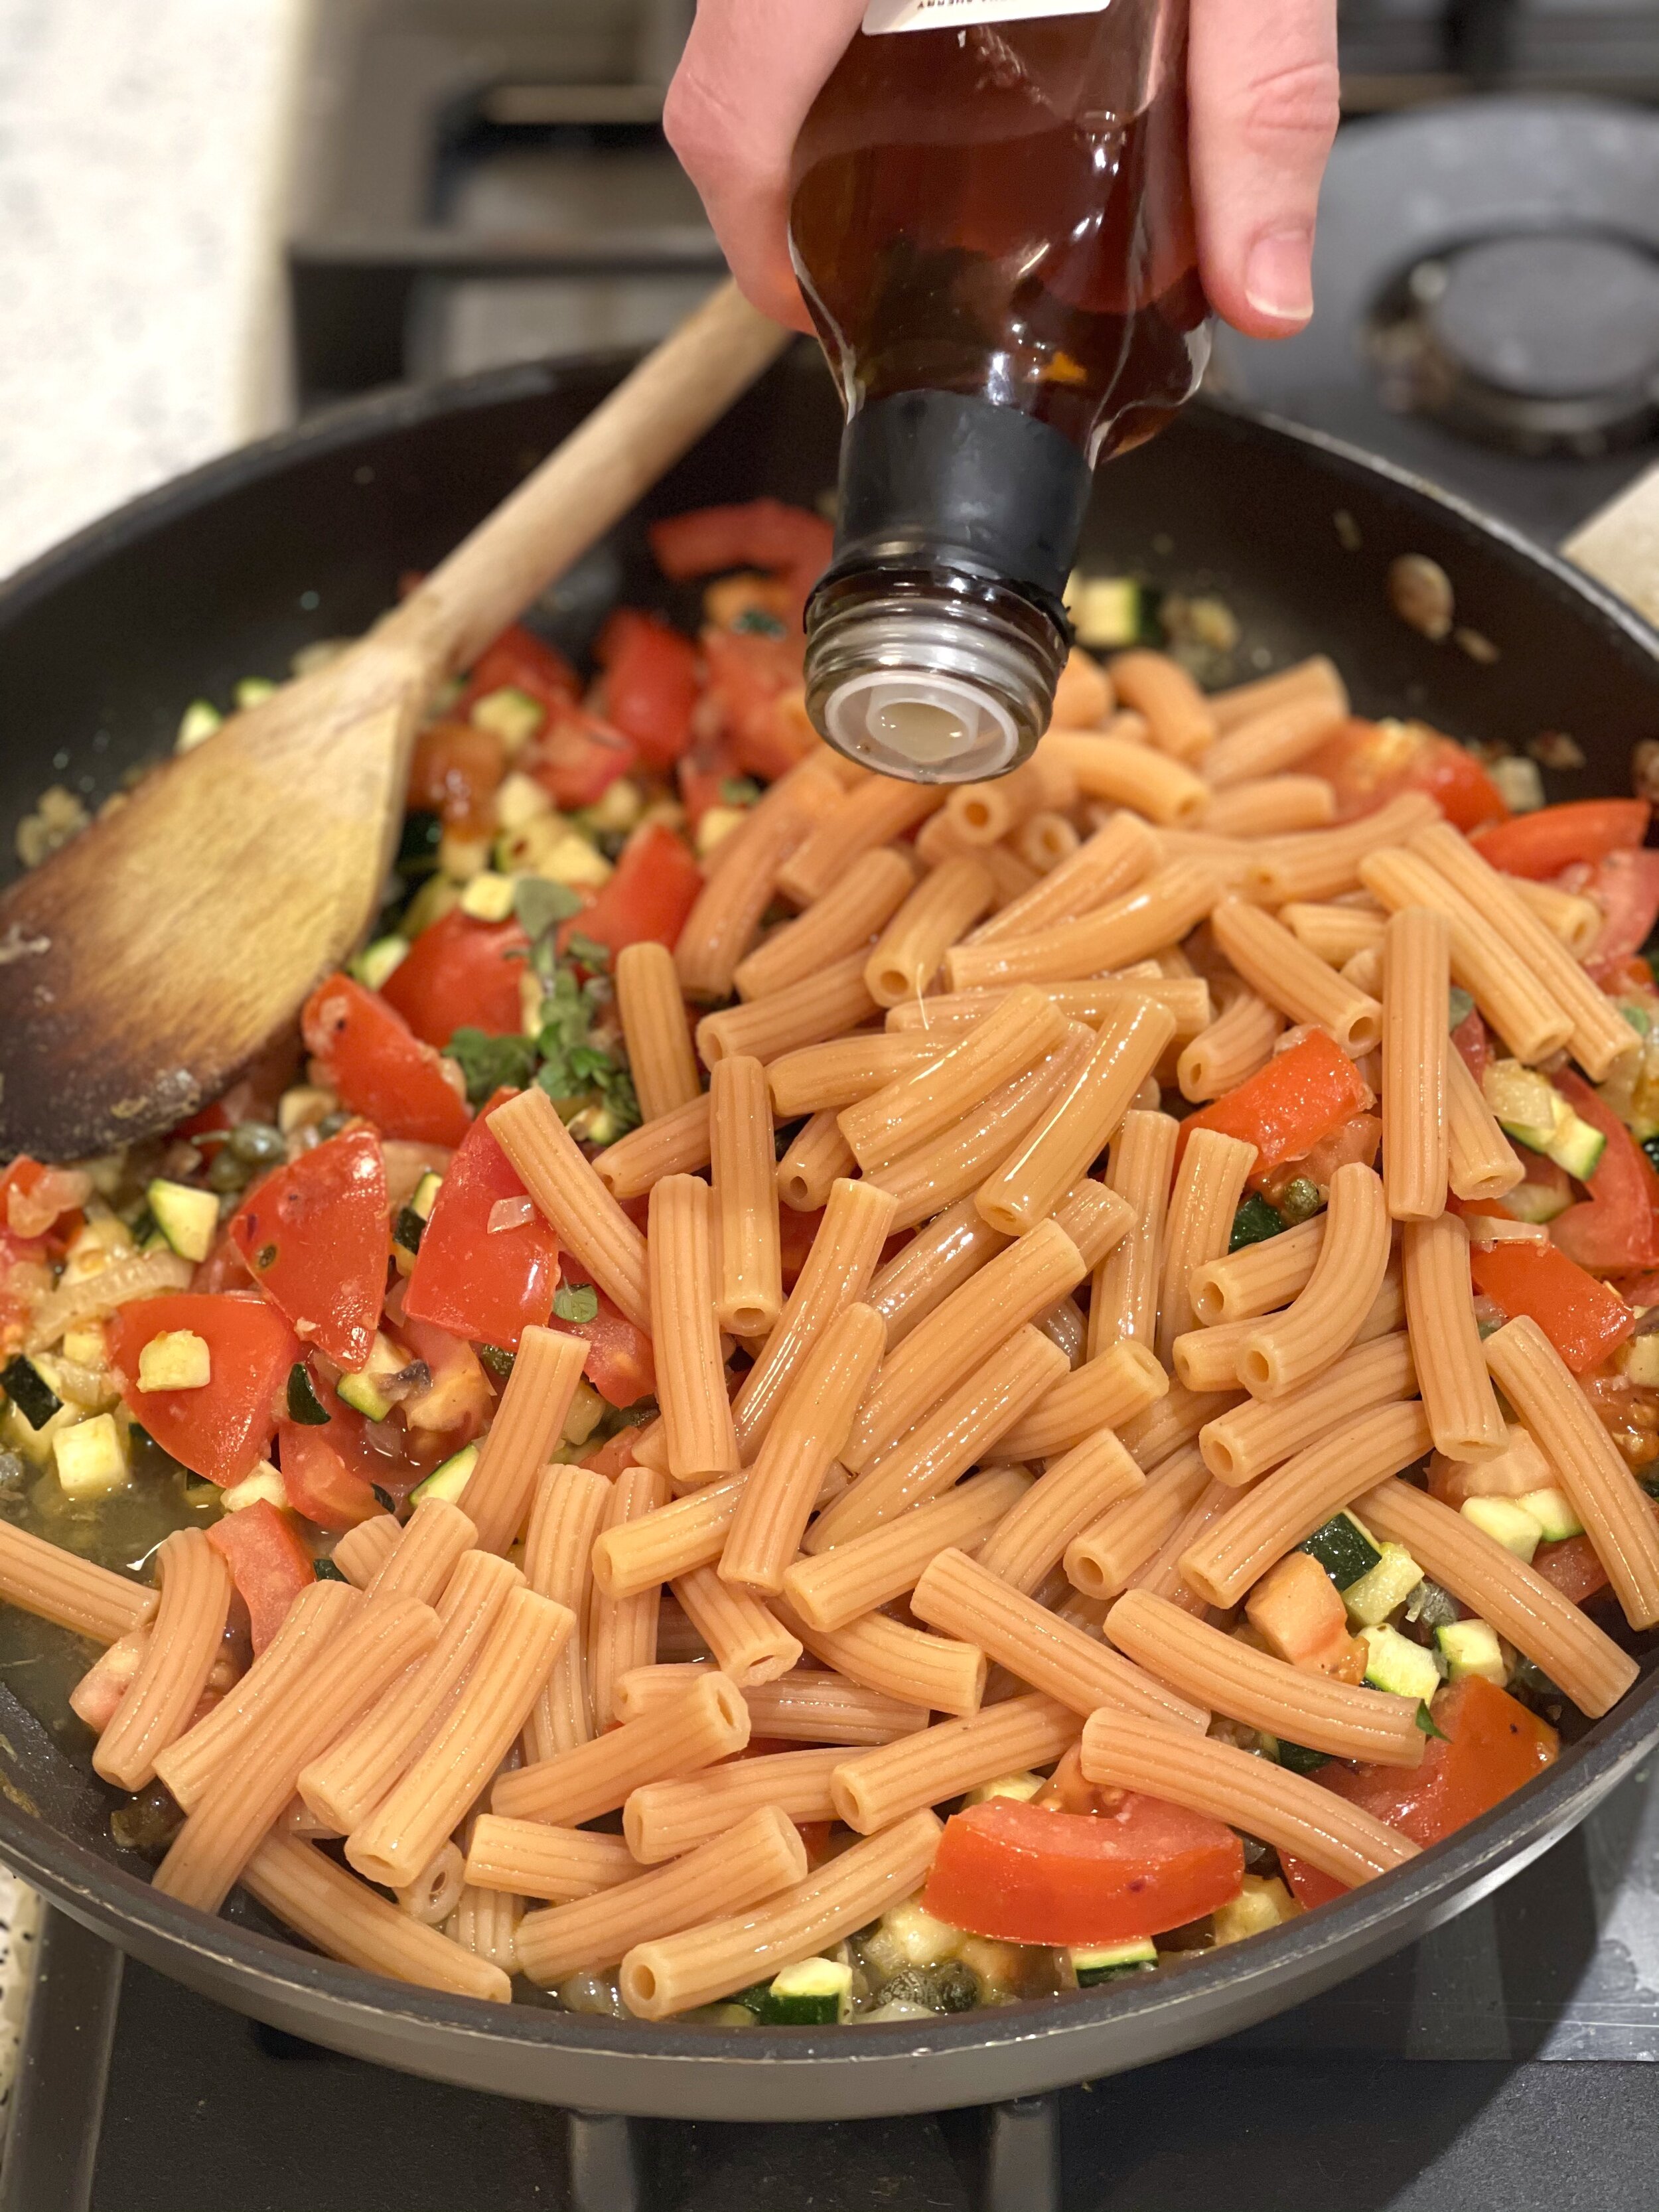 Seasoning a quick ratatouille vegcentric pasta